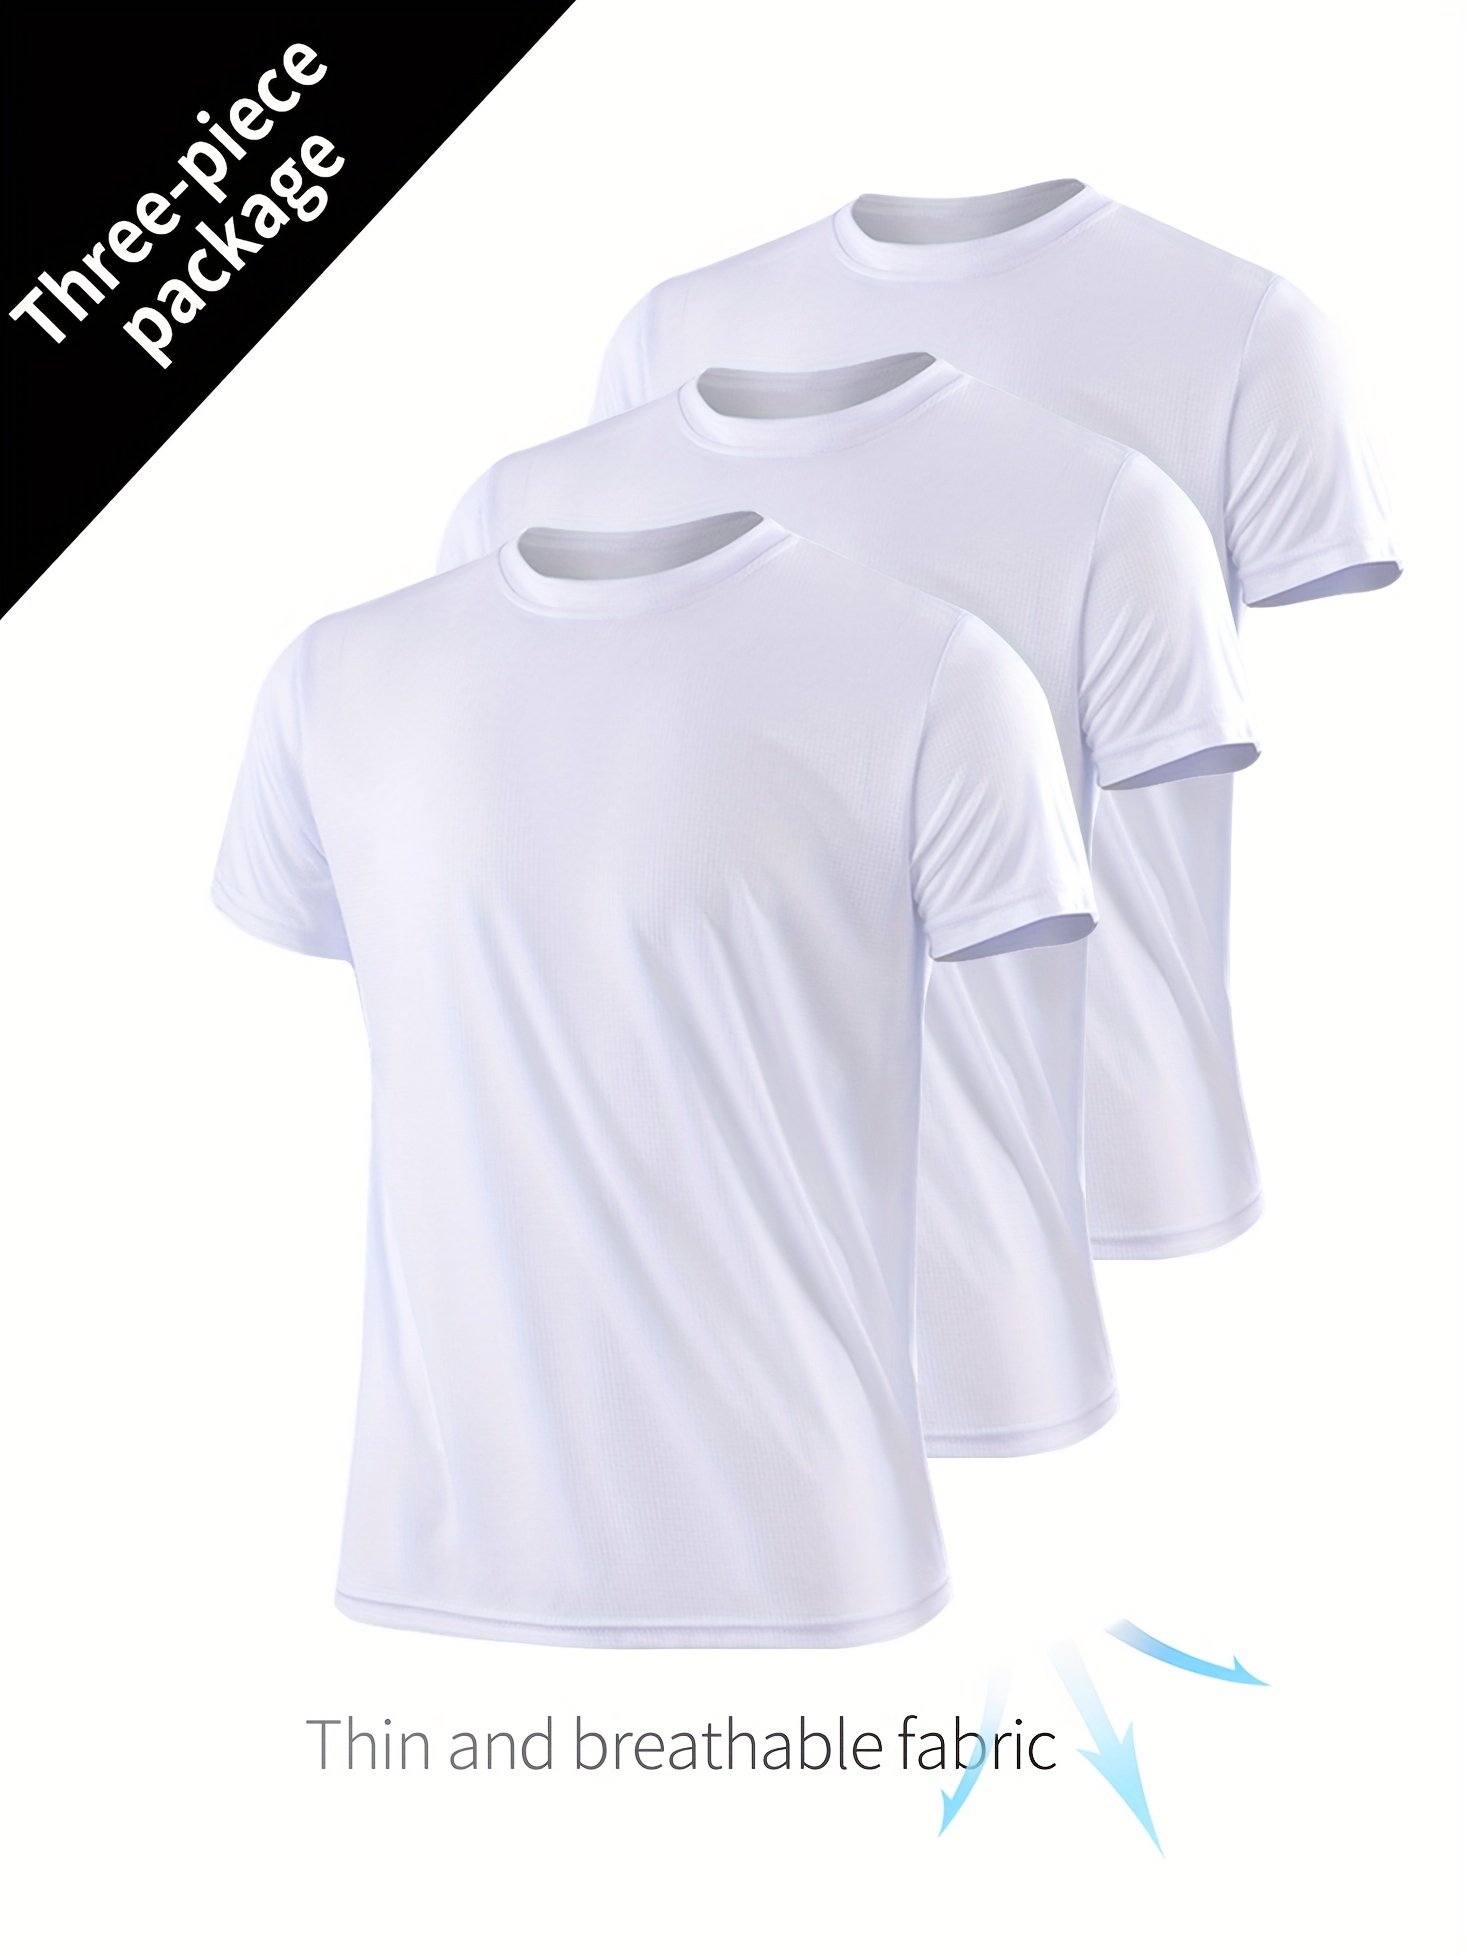 Camisetas blancas completas para hombre.